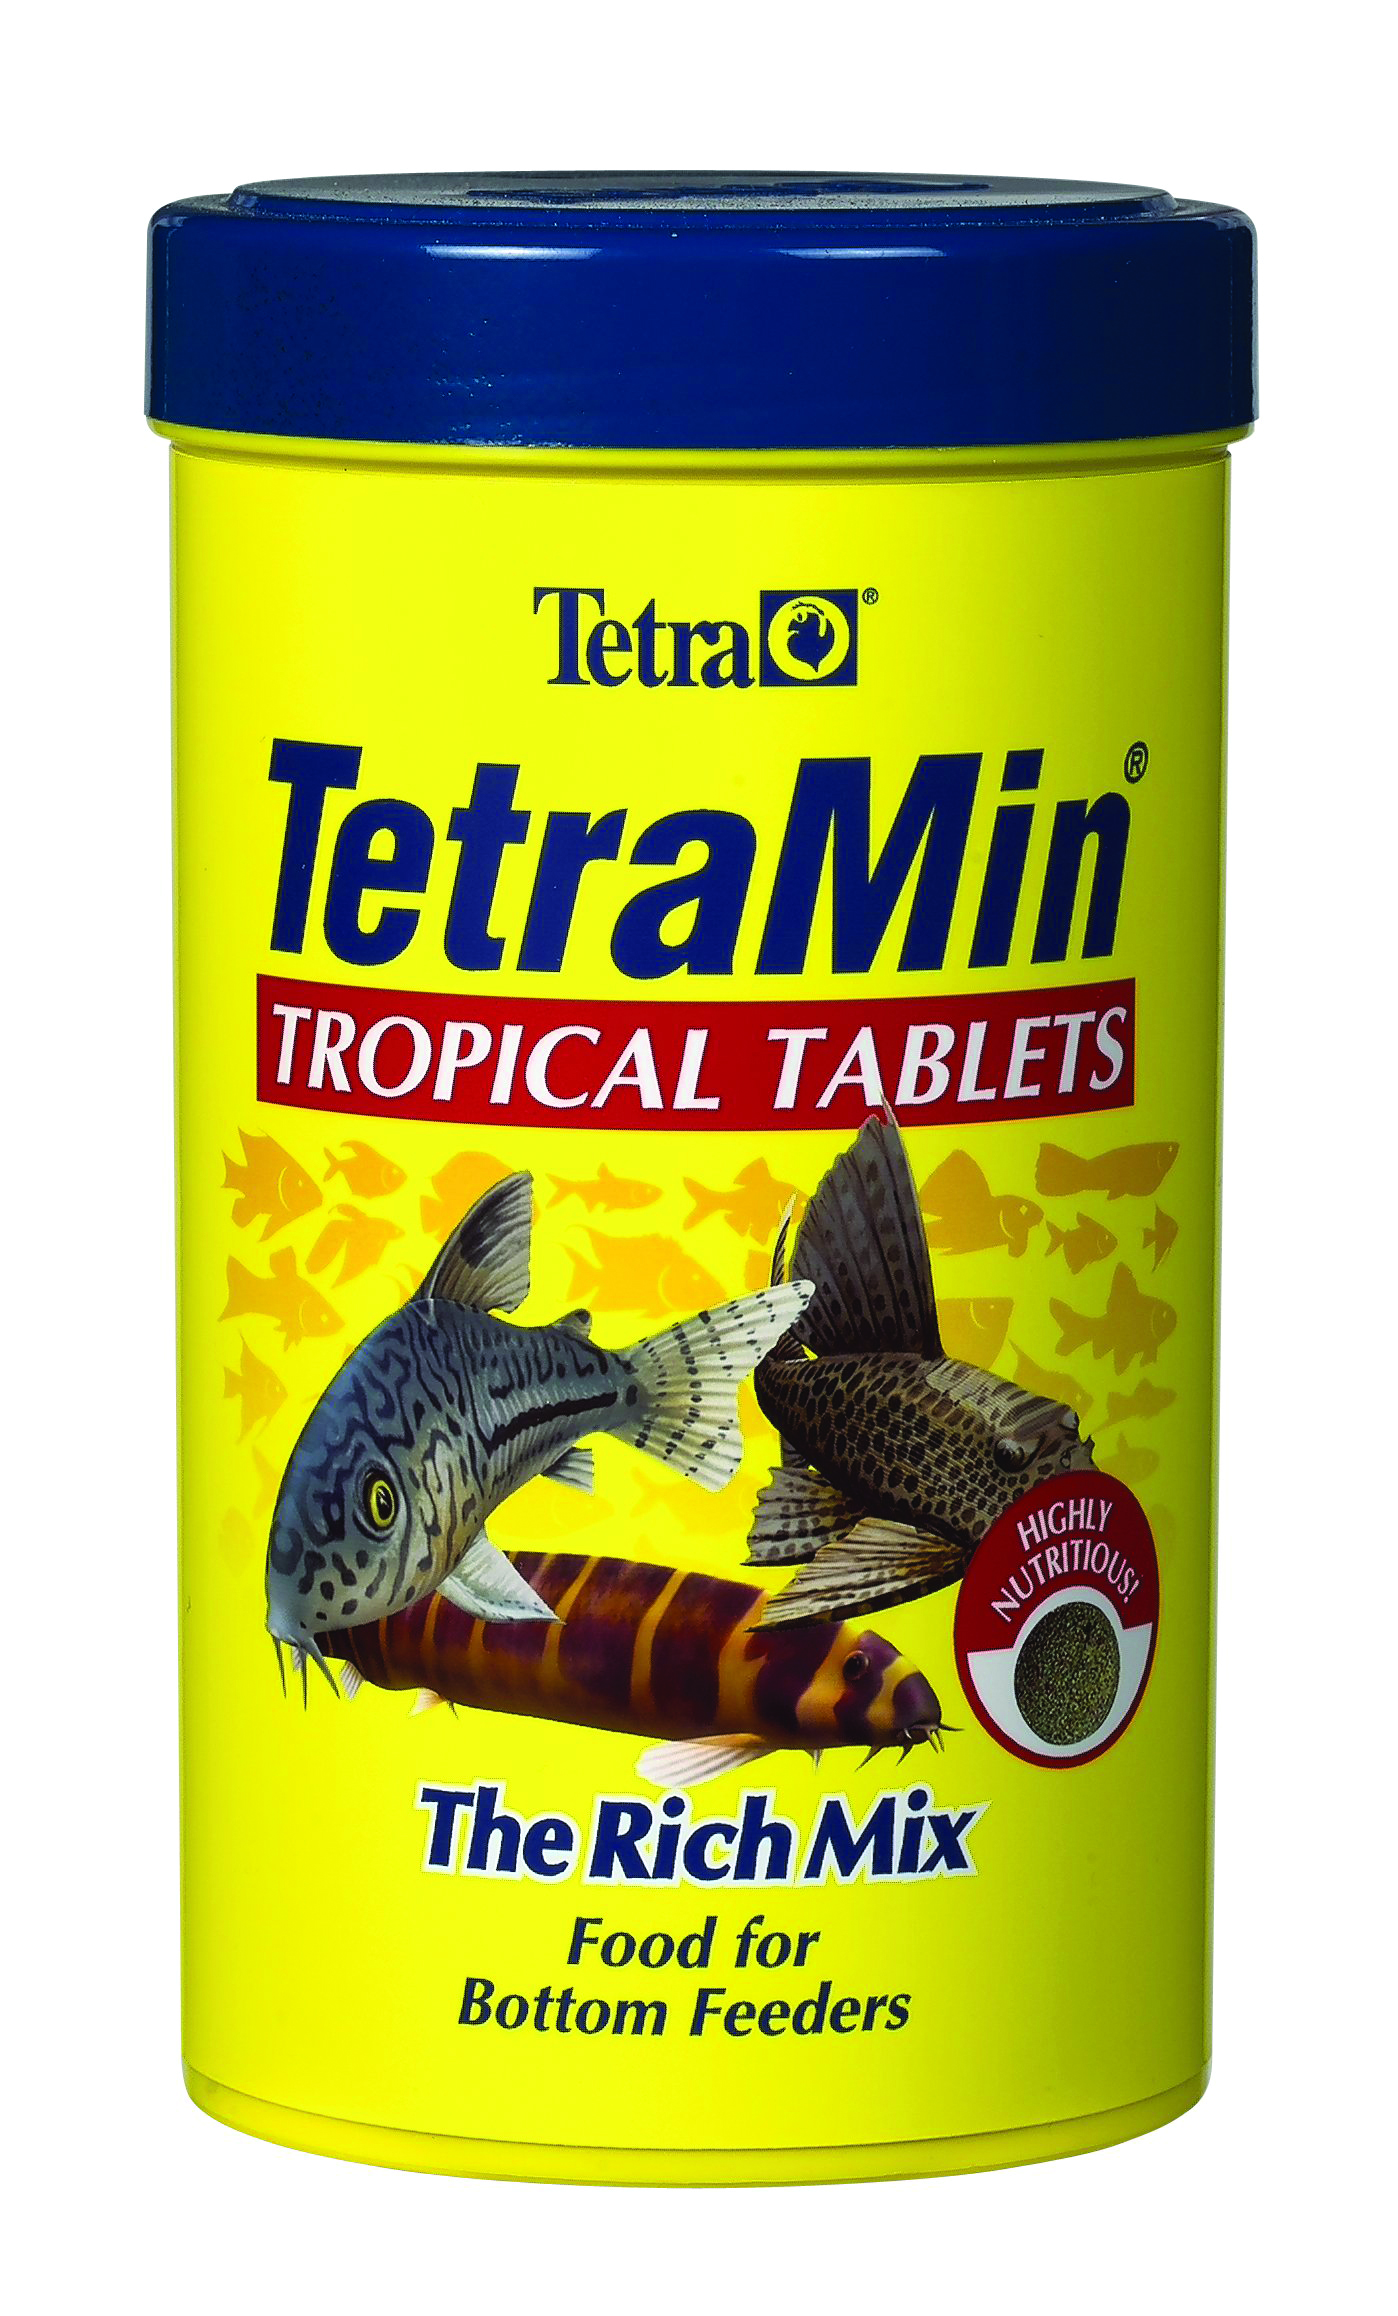 TETRAMIN TROPICAL TABLETS